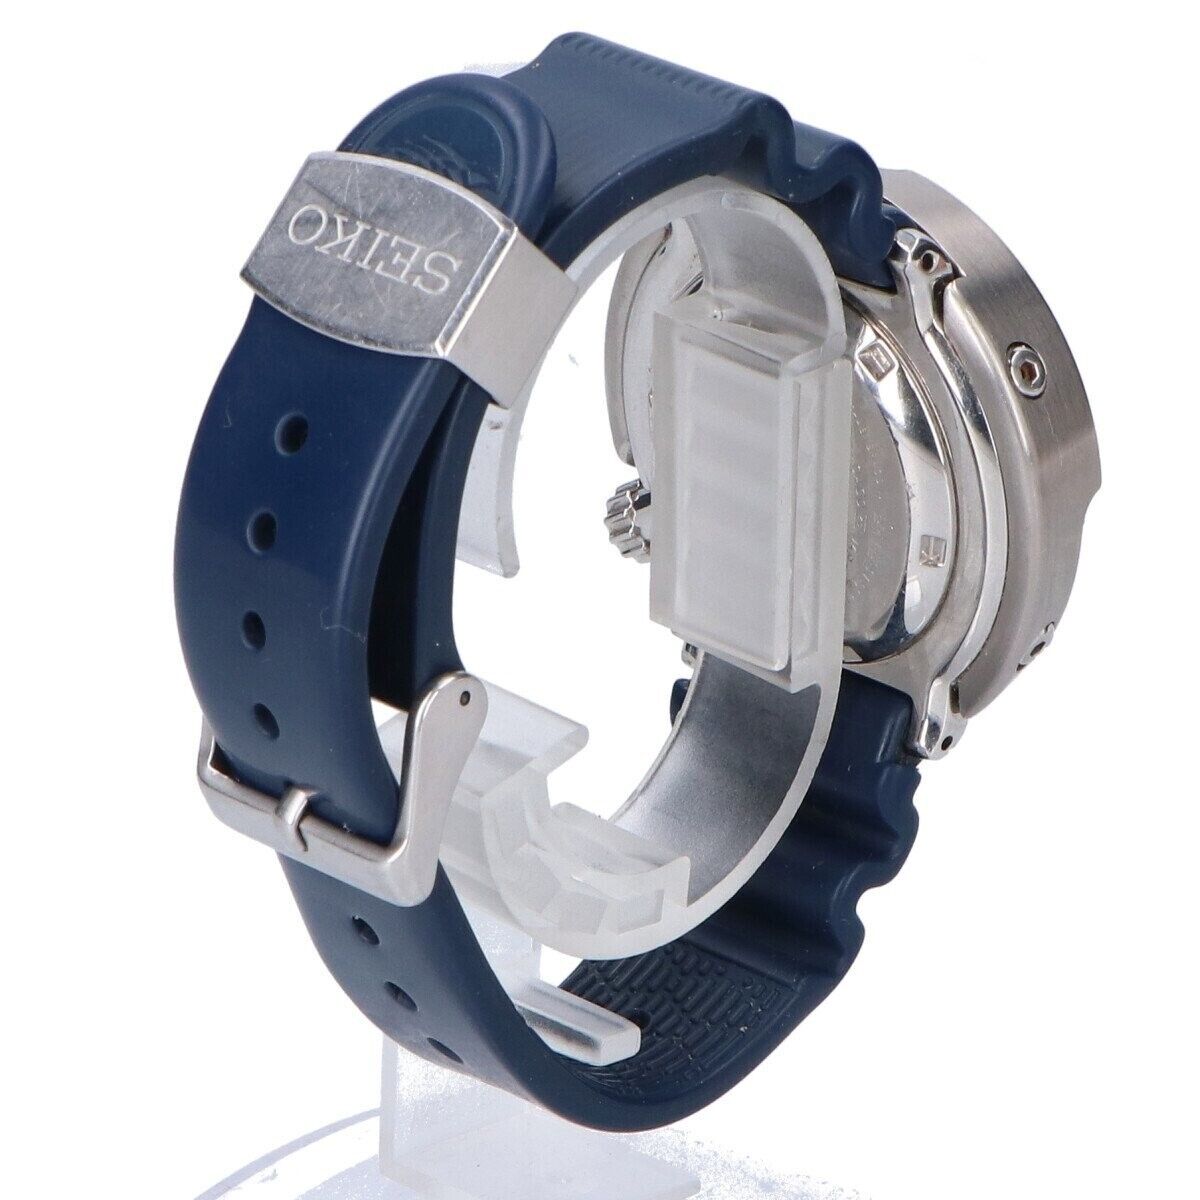 SEIKO SBBN037 PROSPEX marine master professional diver's watch wristwatch  men's | eBay